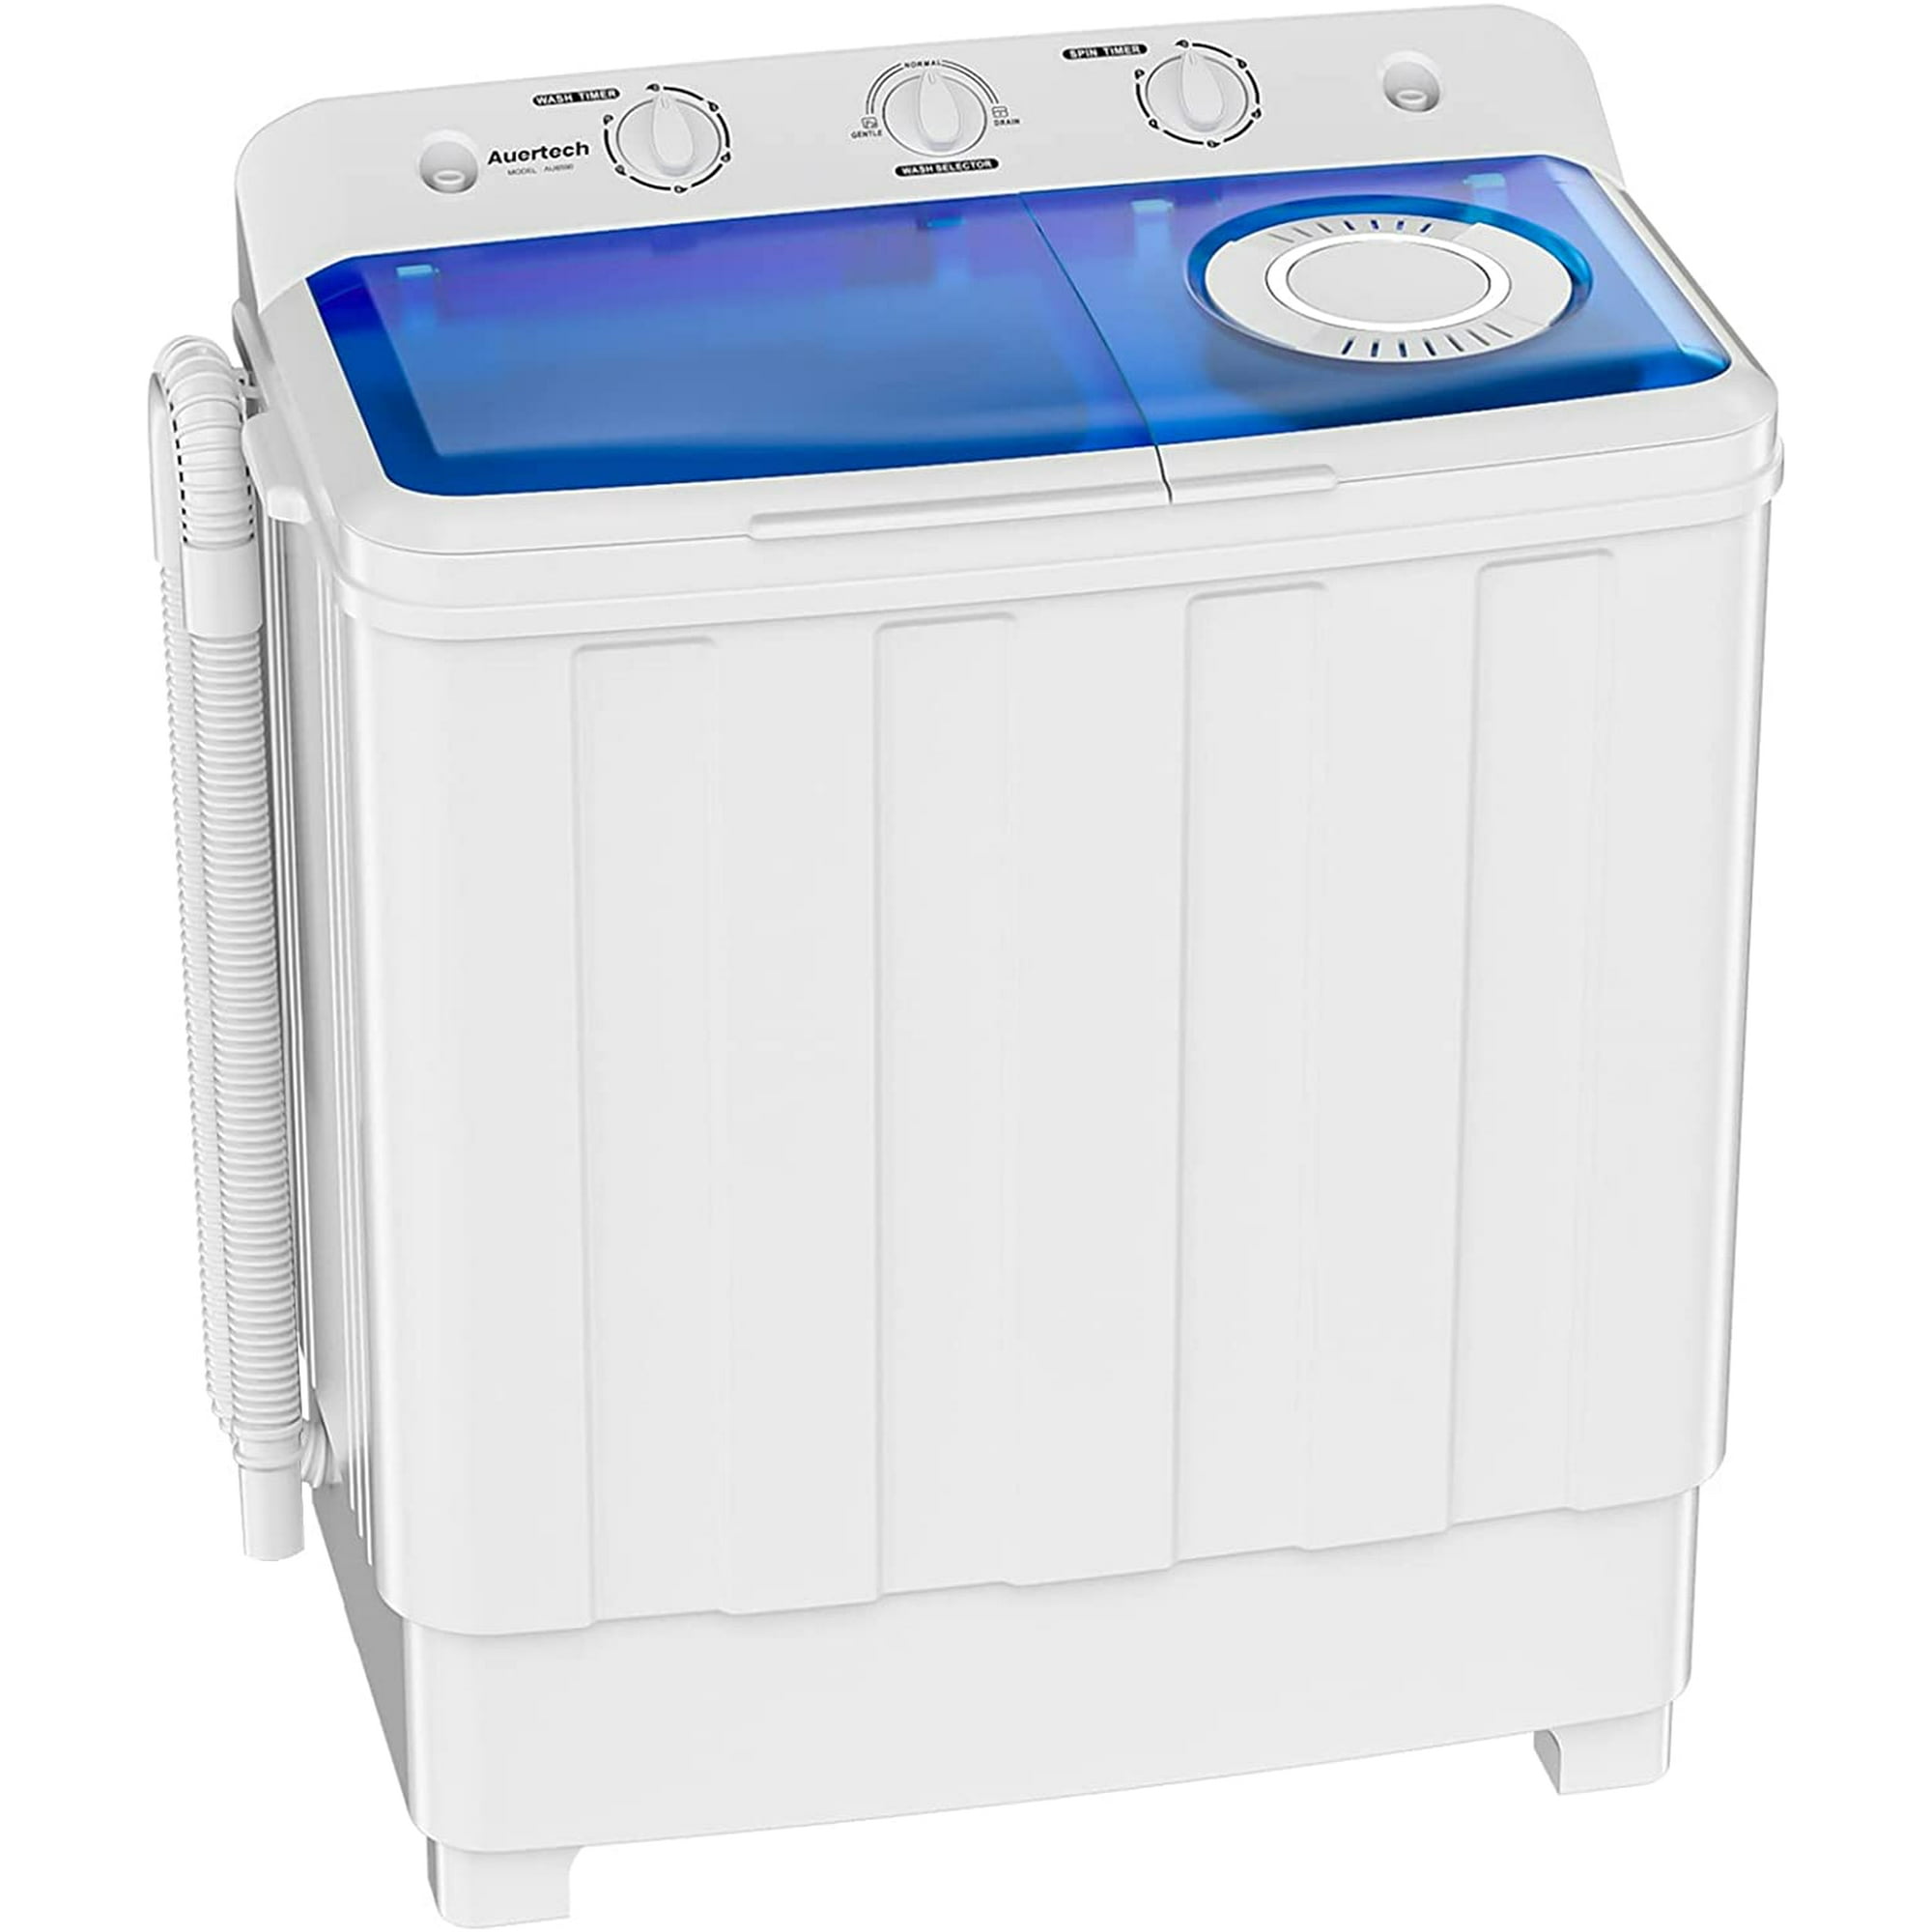  BBBuy Mini lavadora portátil, lavadora compacta de doble tina  con lavadora giratoria, bomba de drenaje por gravedad y manguera de drenaje  : Electrodomésticos